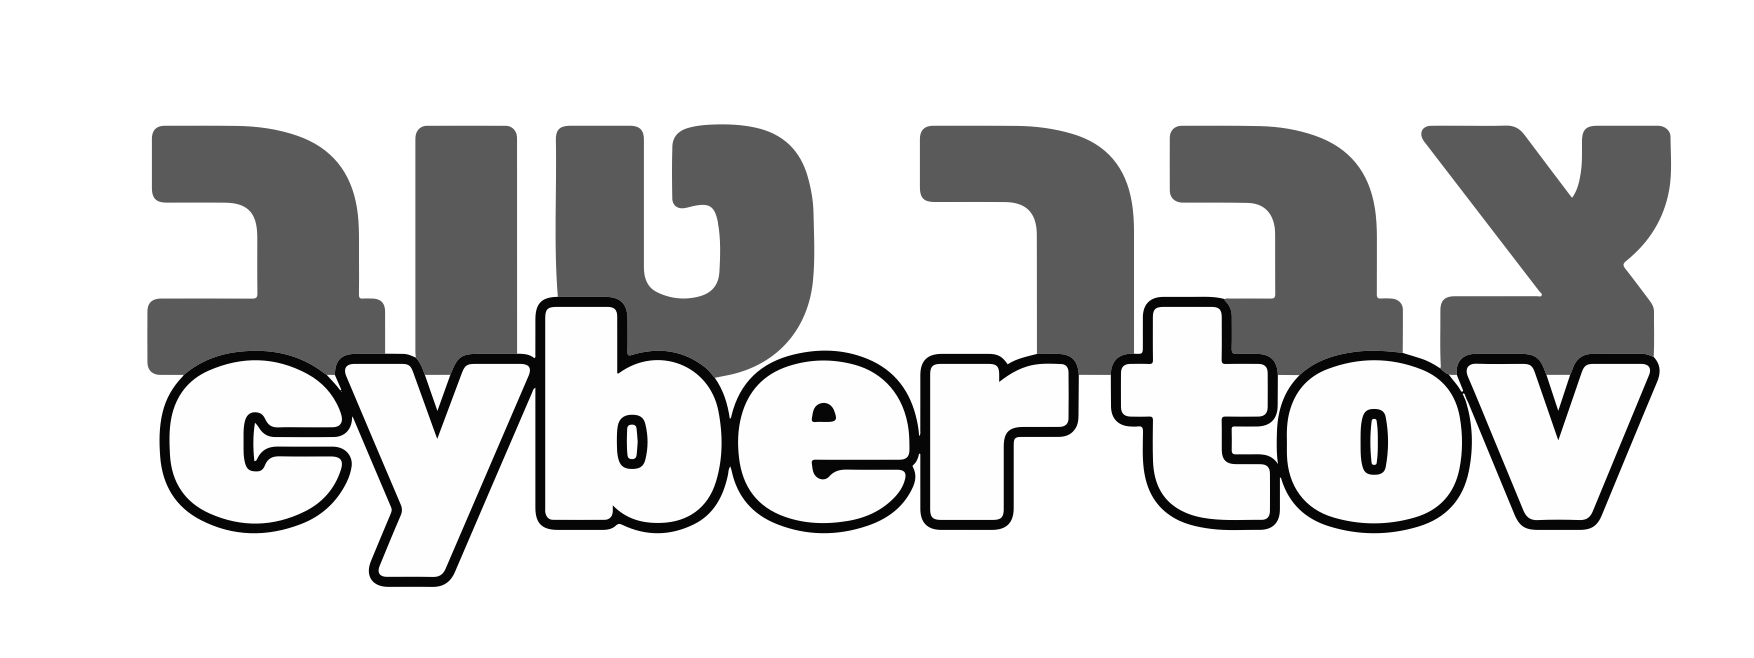 cybertov Logo